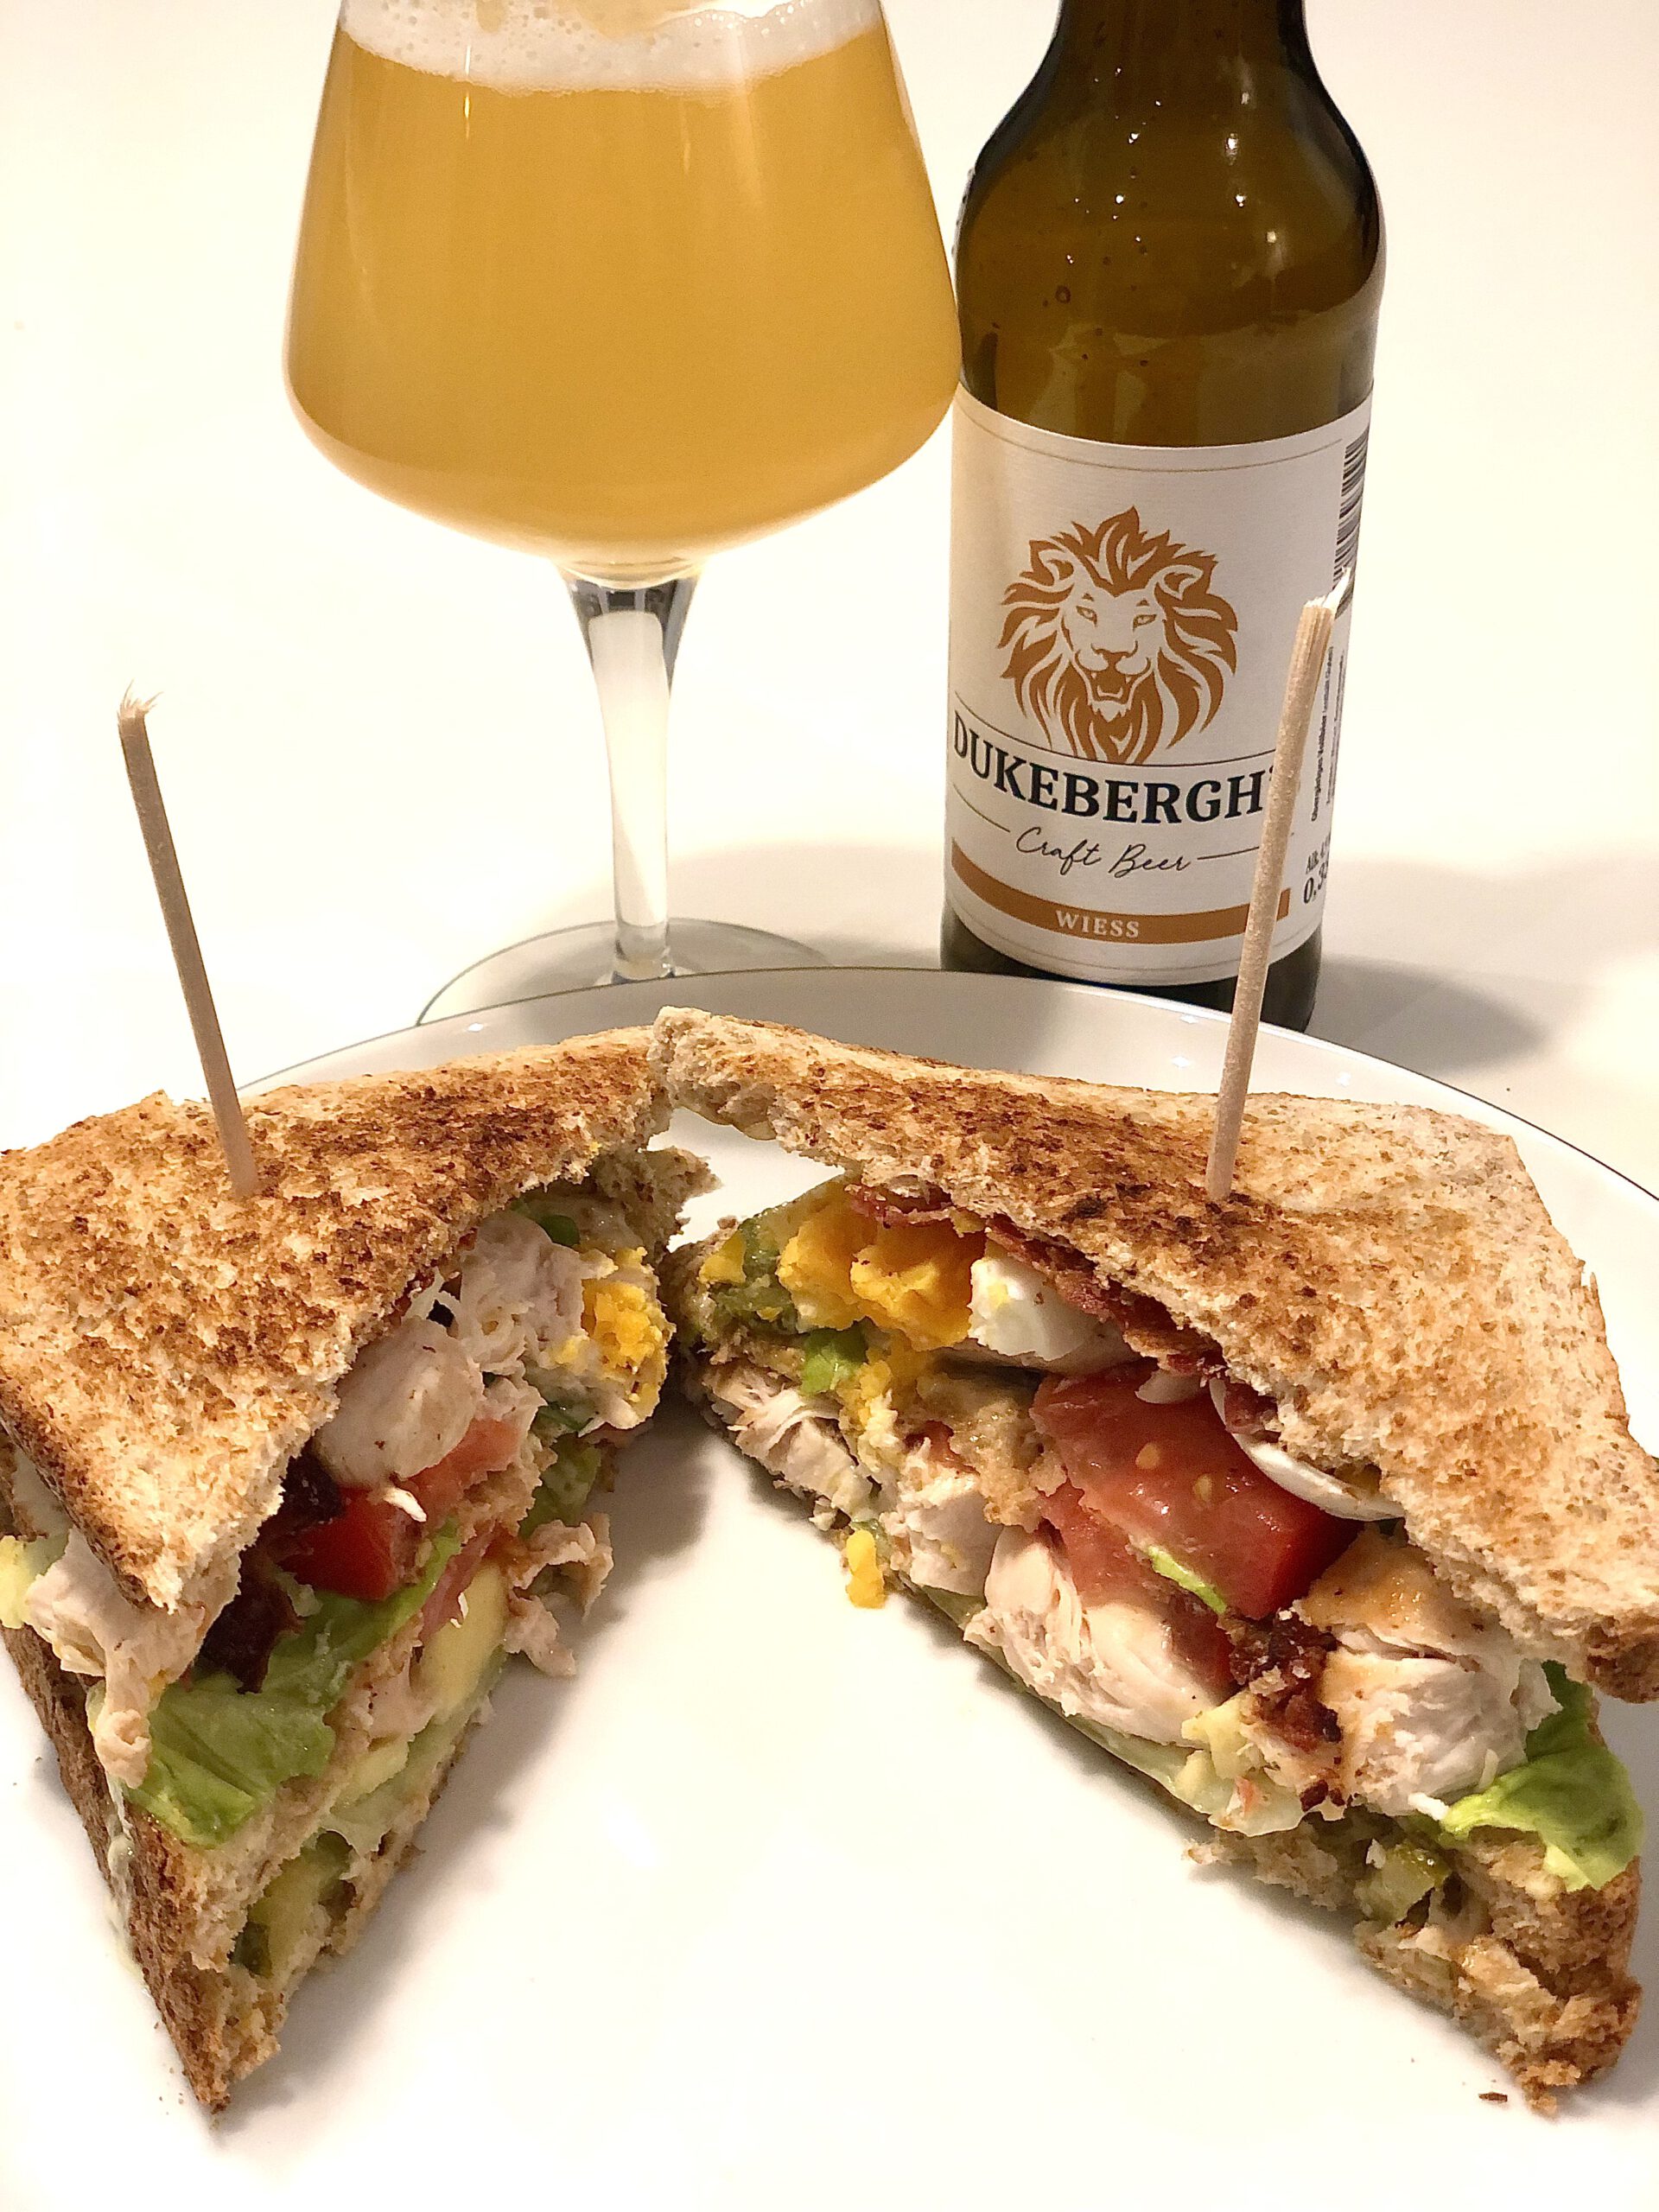 Club Sandwich meets Dukebergh’s Wieß